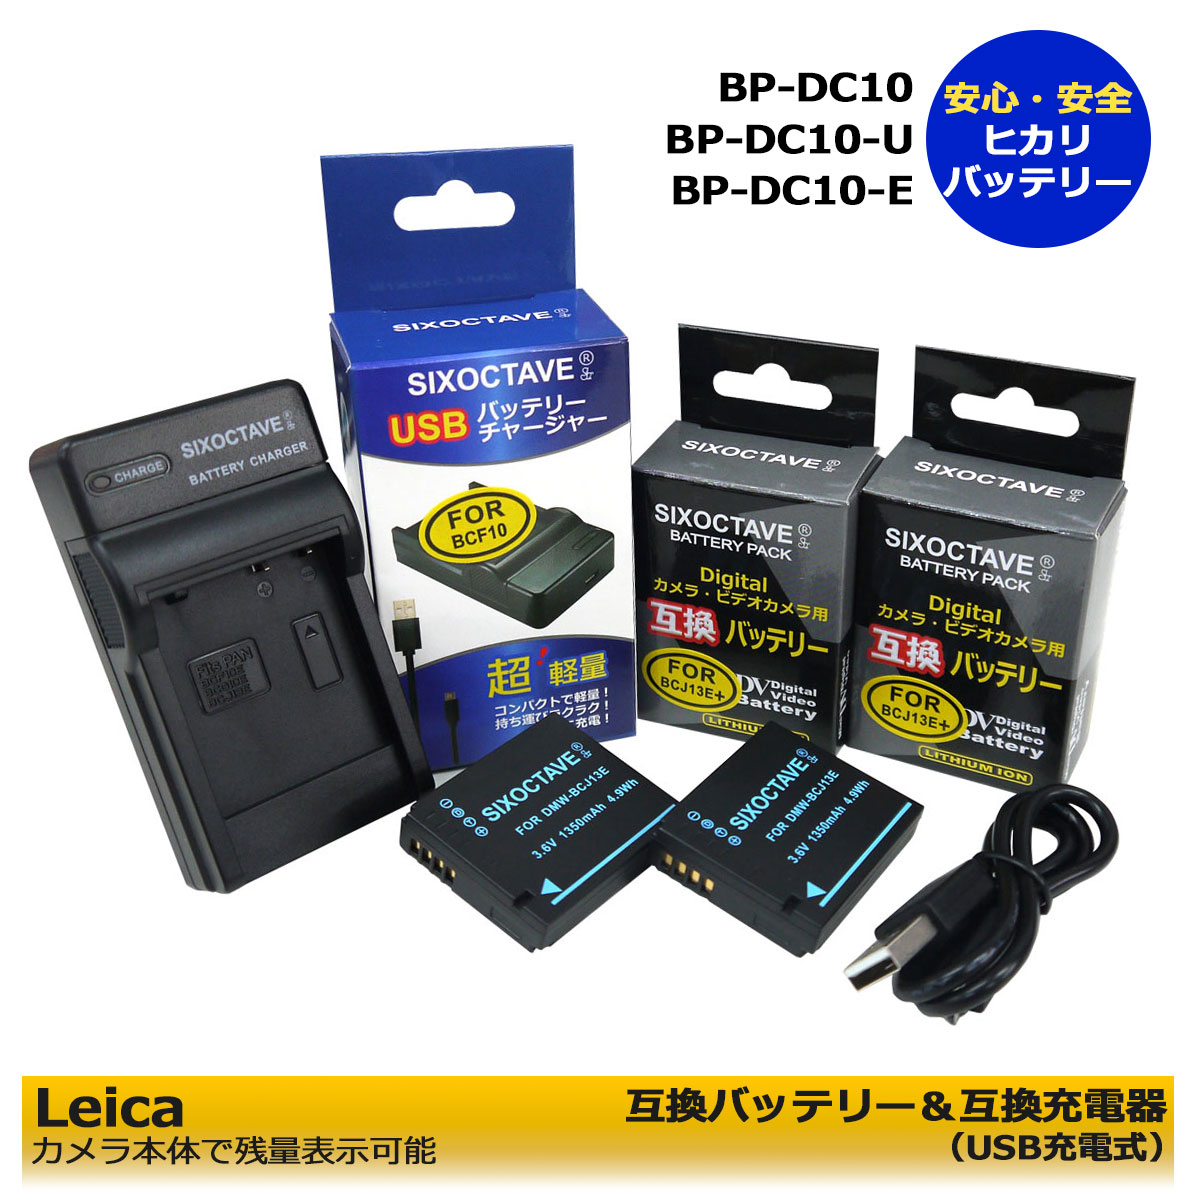 送料無料 Leica BP-DC10 / BP-DC10-U / BP-DC10-E【あす楽対応】互換バッテリー 2個と 互換充電器 1個の3点セット D-LUX5 / D-LUX6 など 純正バッテリーも充電可能